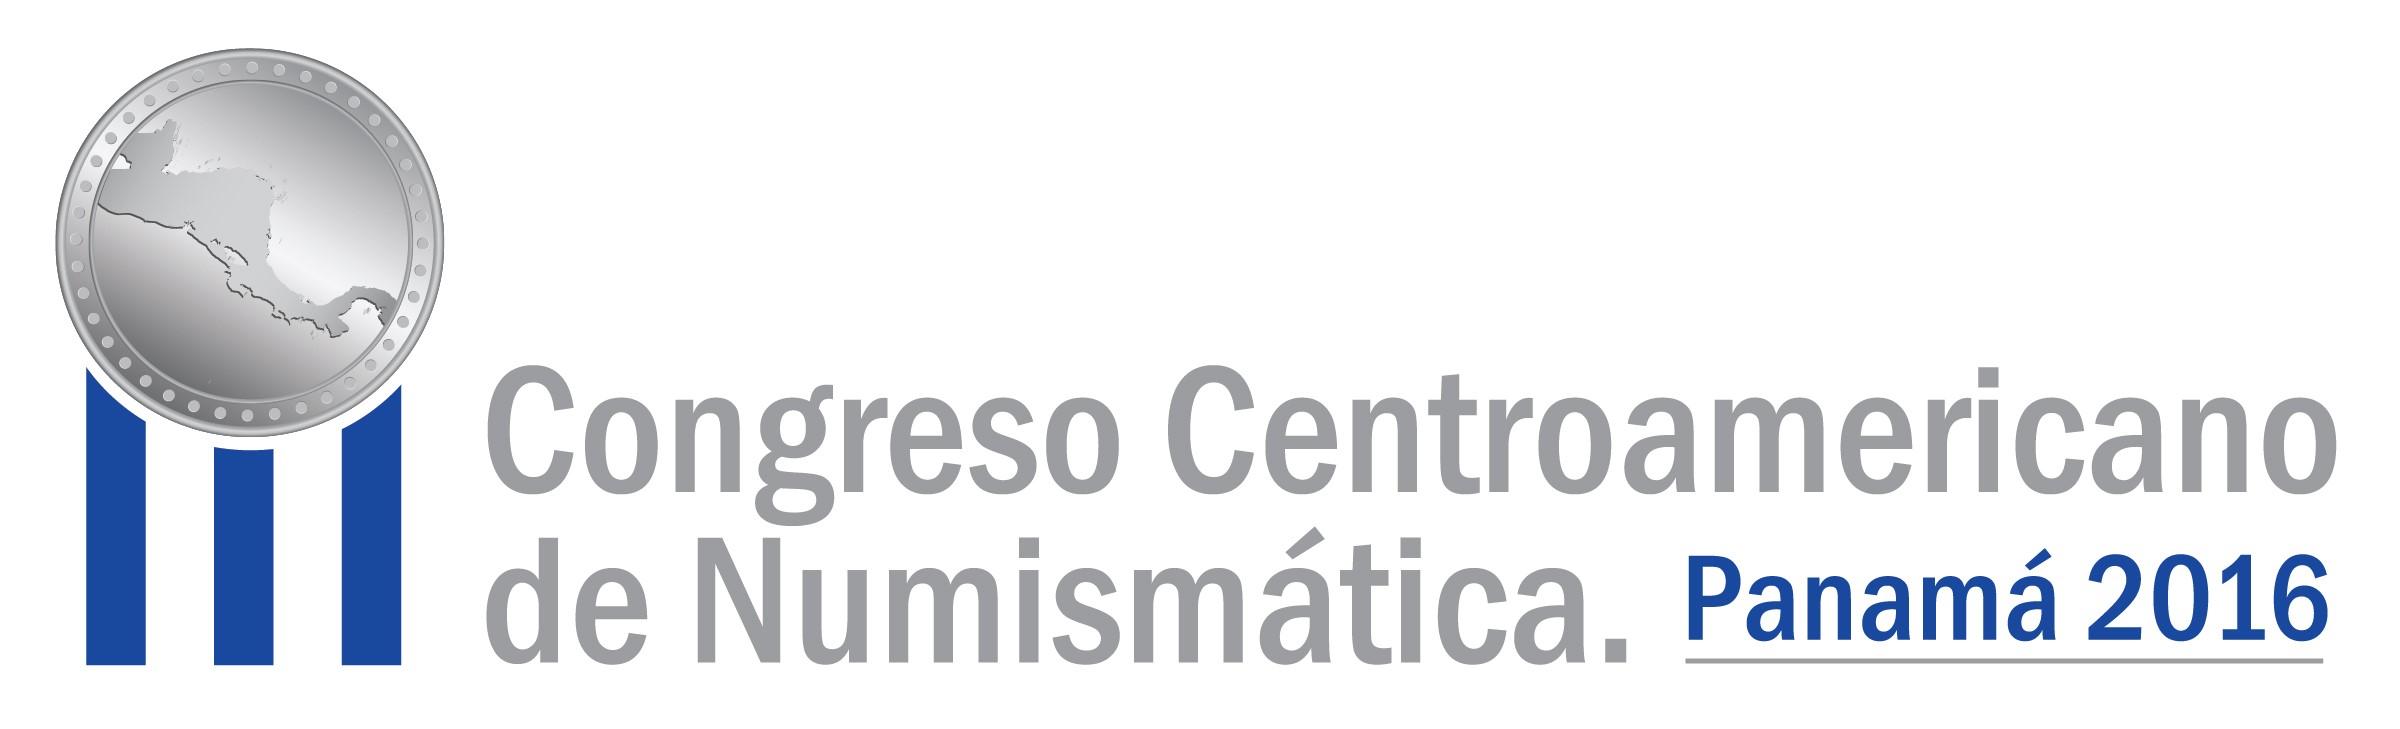 2016-logo-congreso-g